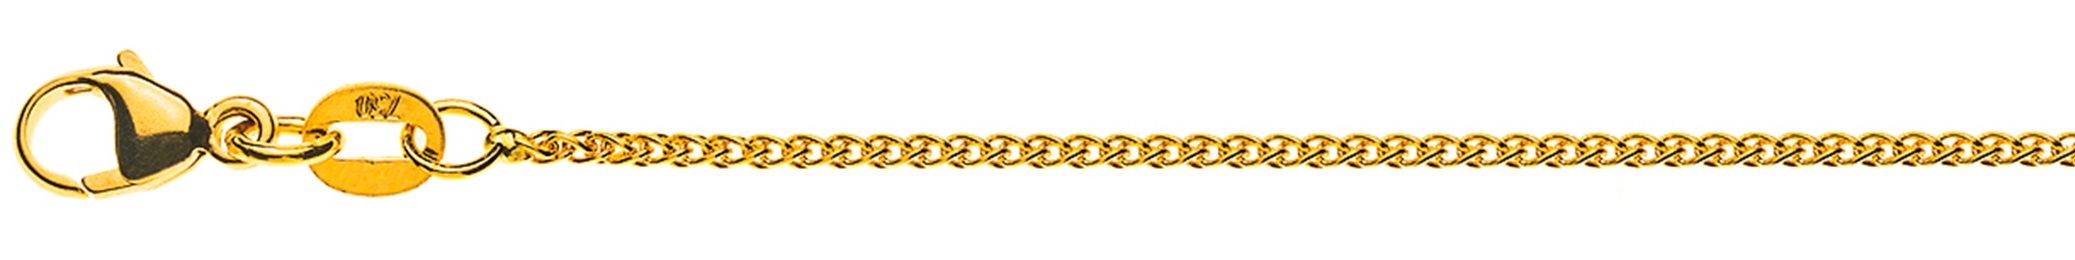 AURONOS Élégance Necklace yellow gold 14K cable chain 42cm 1.2mm